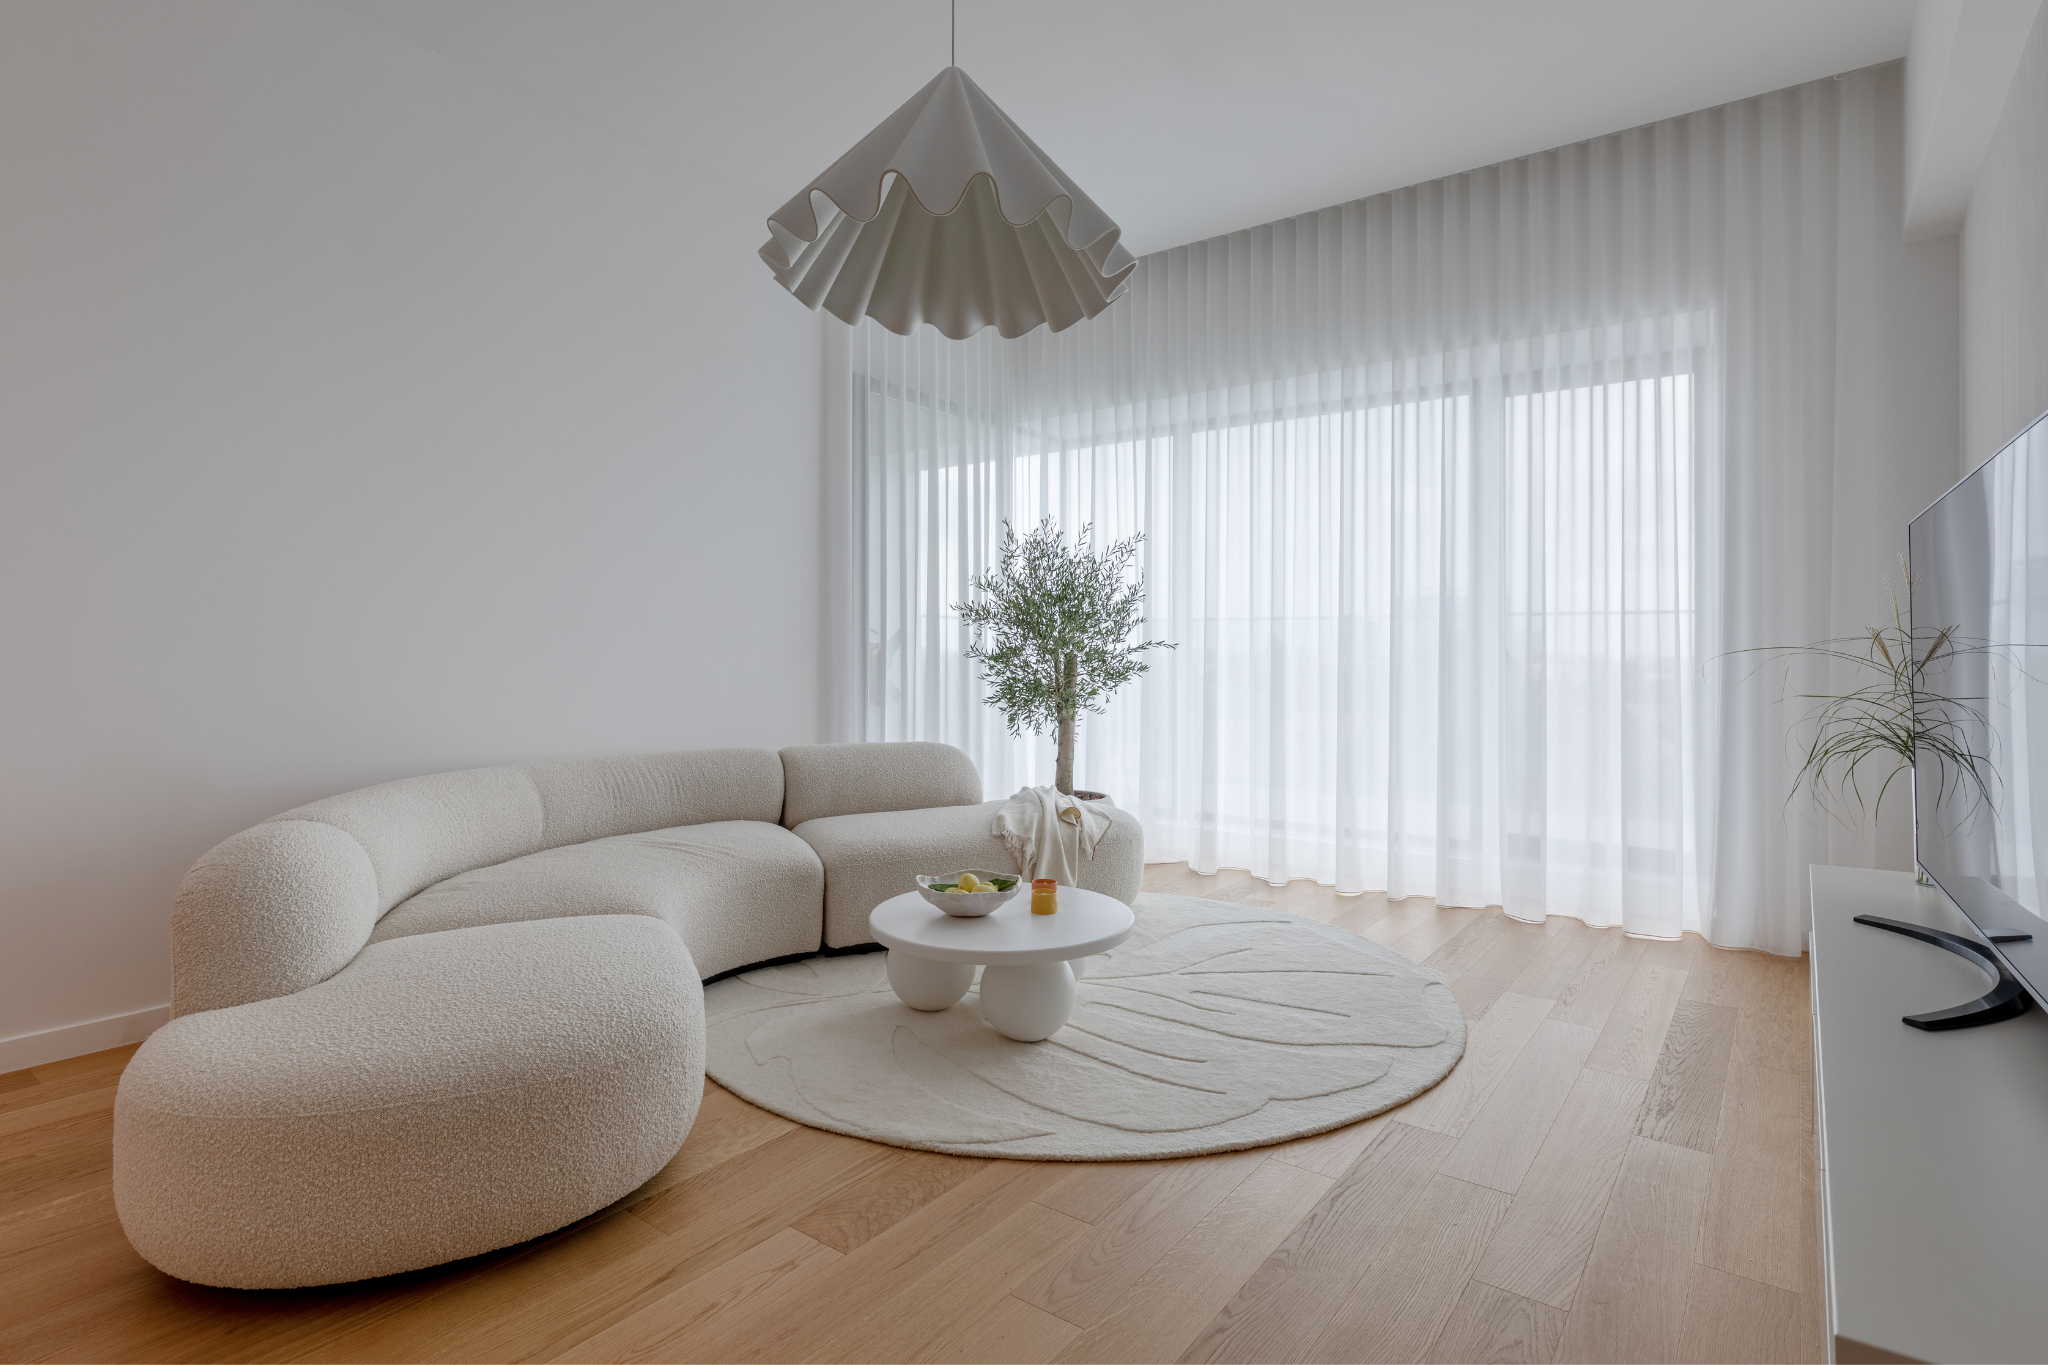 Living room minimalist, alb